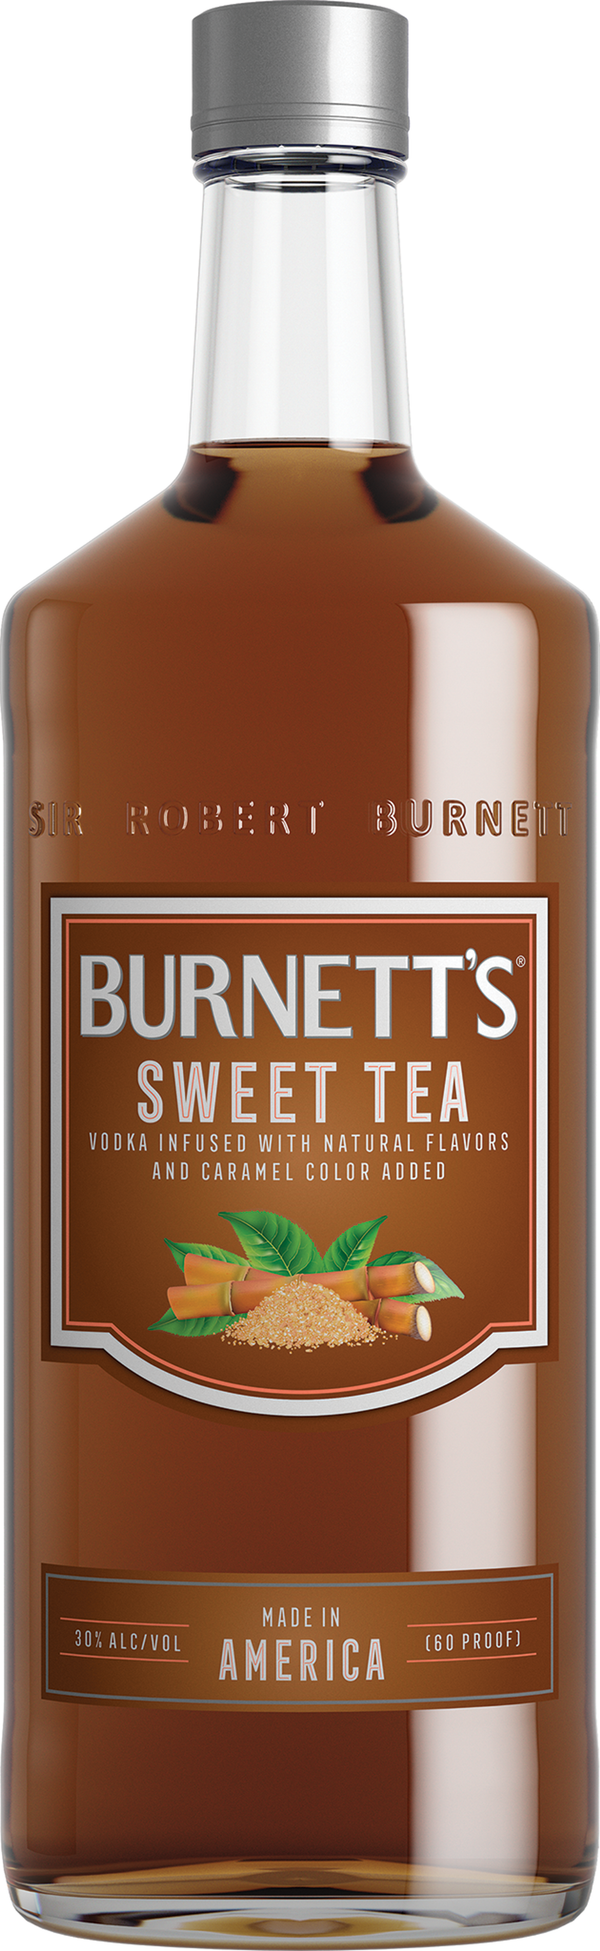 BURNETT'S SWEET TEA